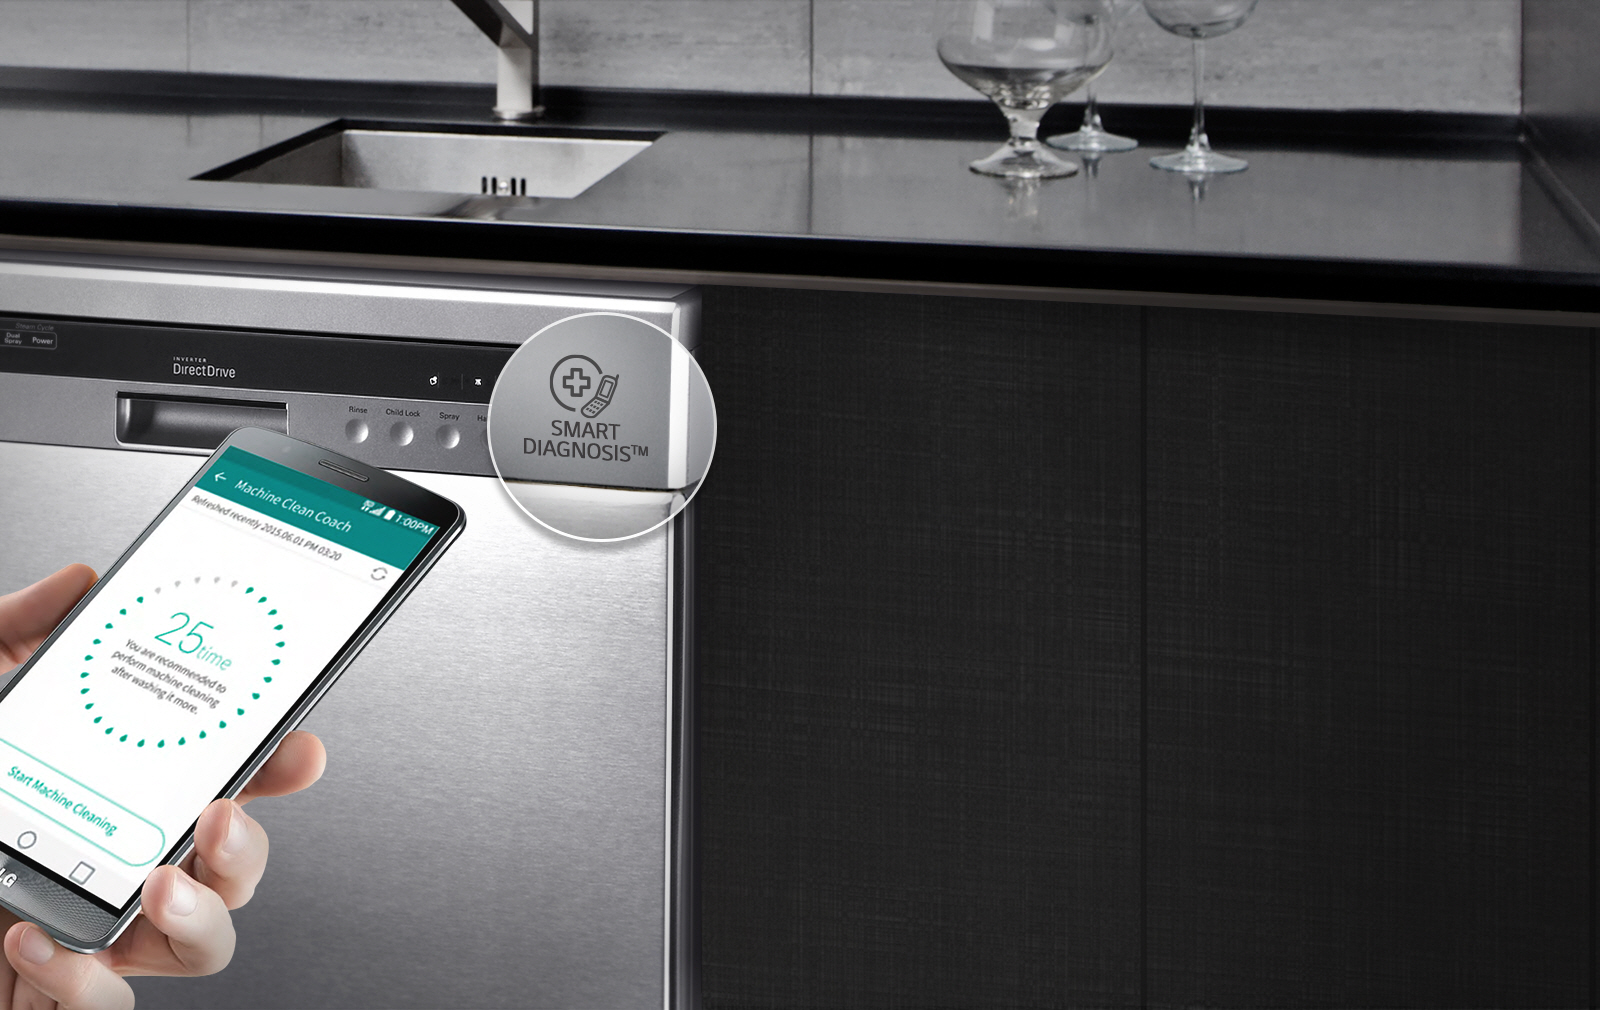 LG Smart dishwasher